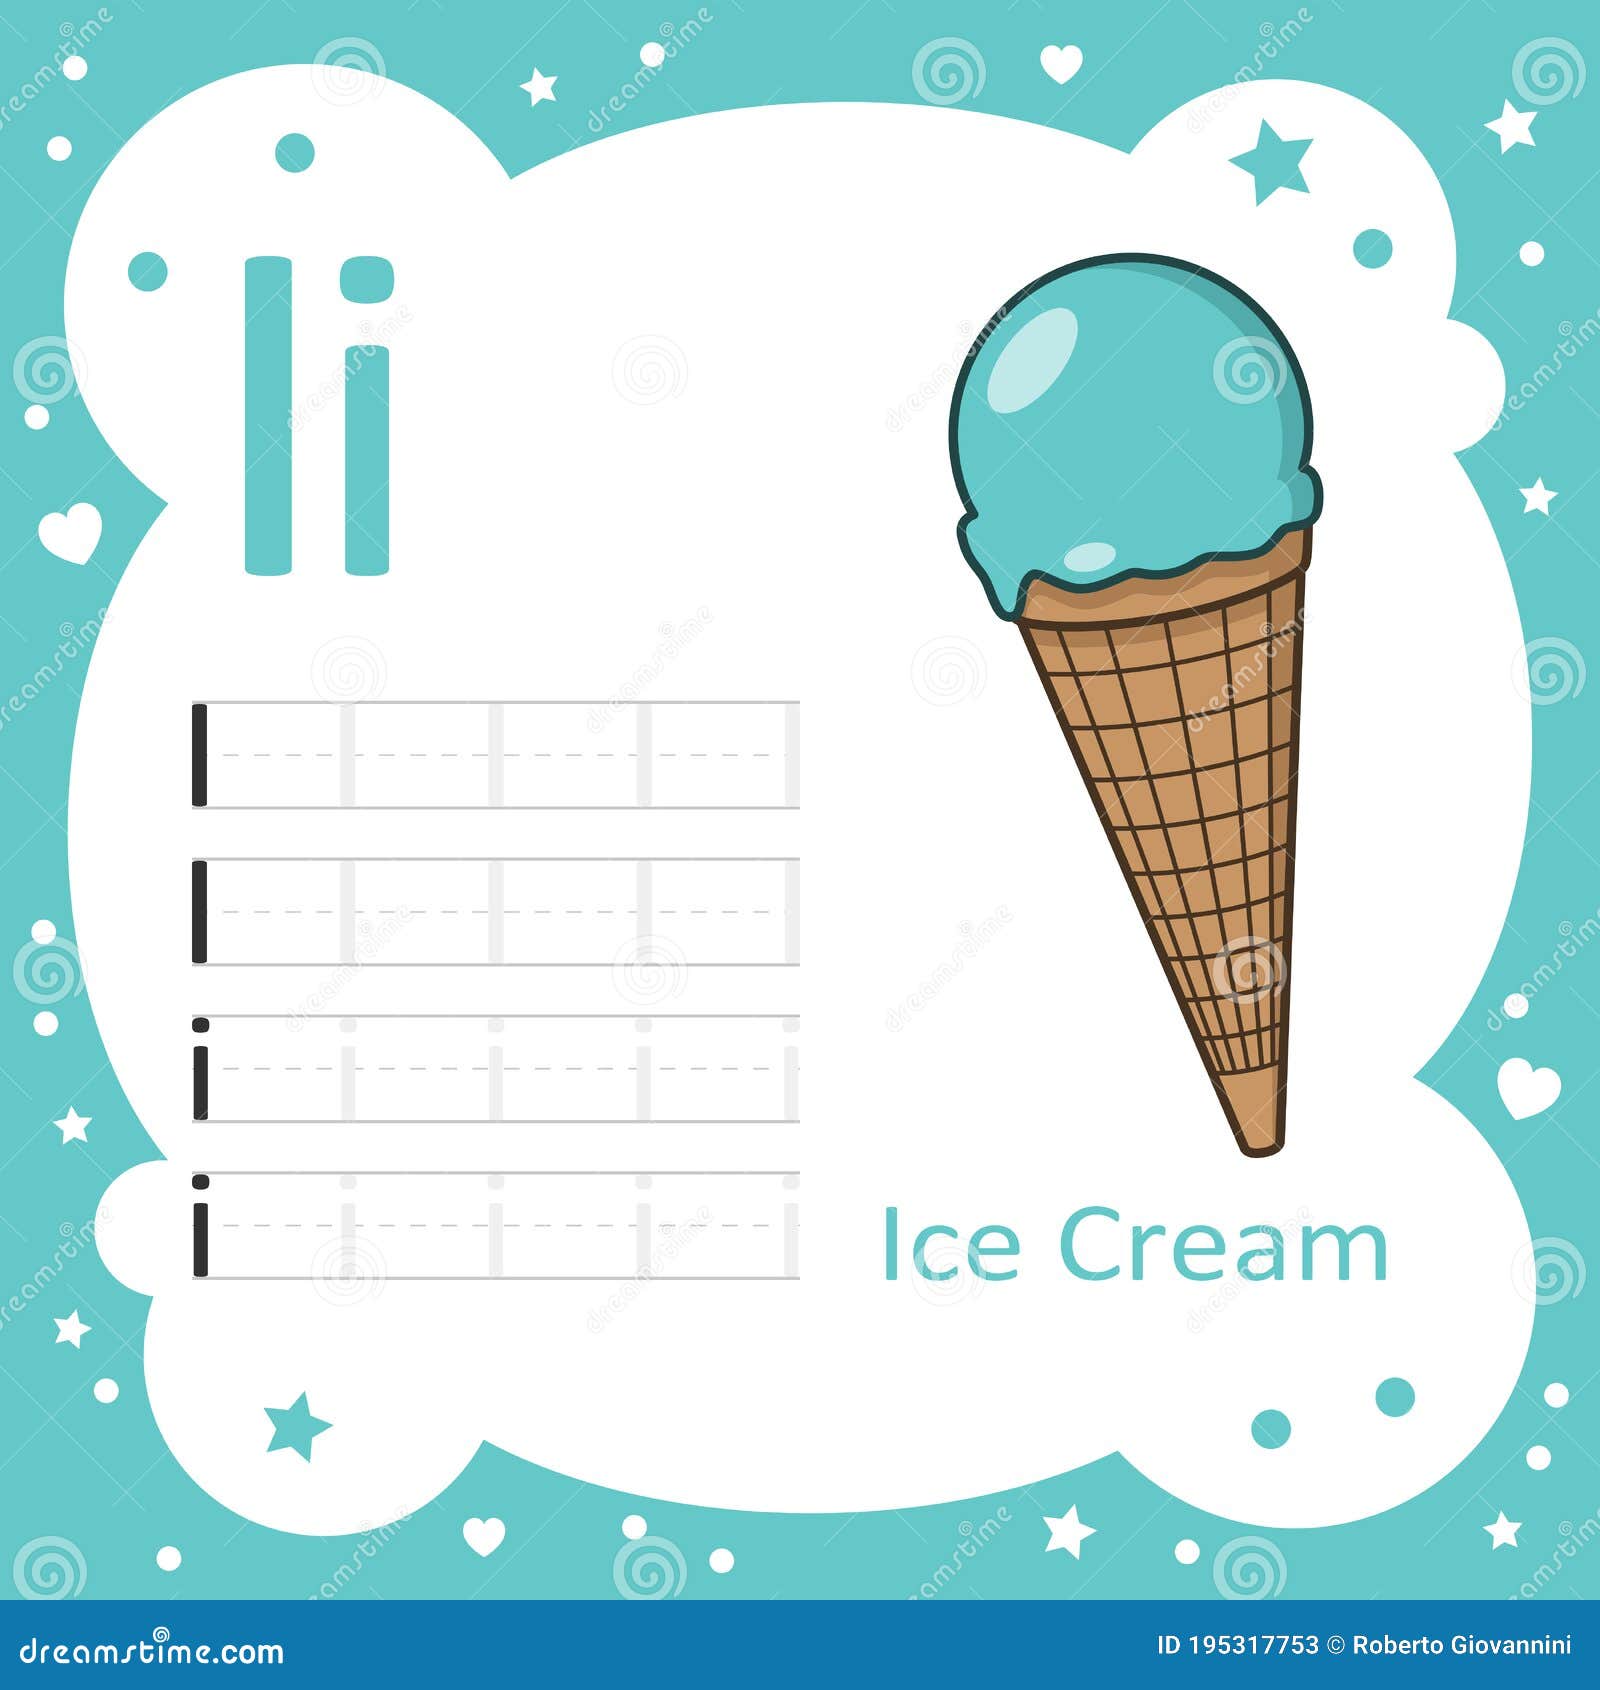 Мороженое учи. Мороженое алфавит. Буквы мороженое. Мороженое на букву т. Мороженое на букву н.